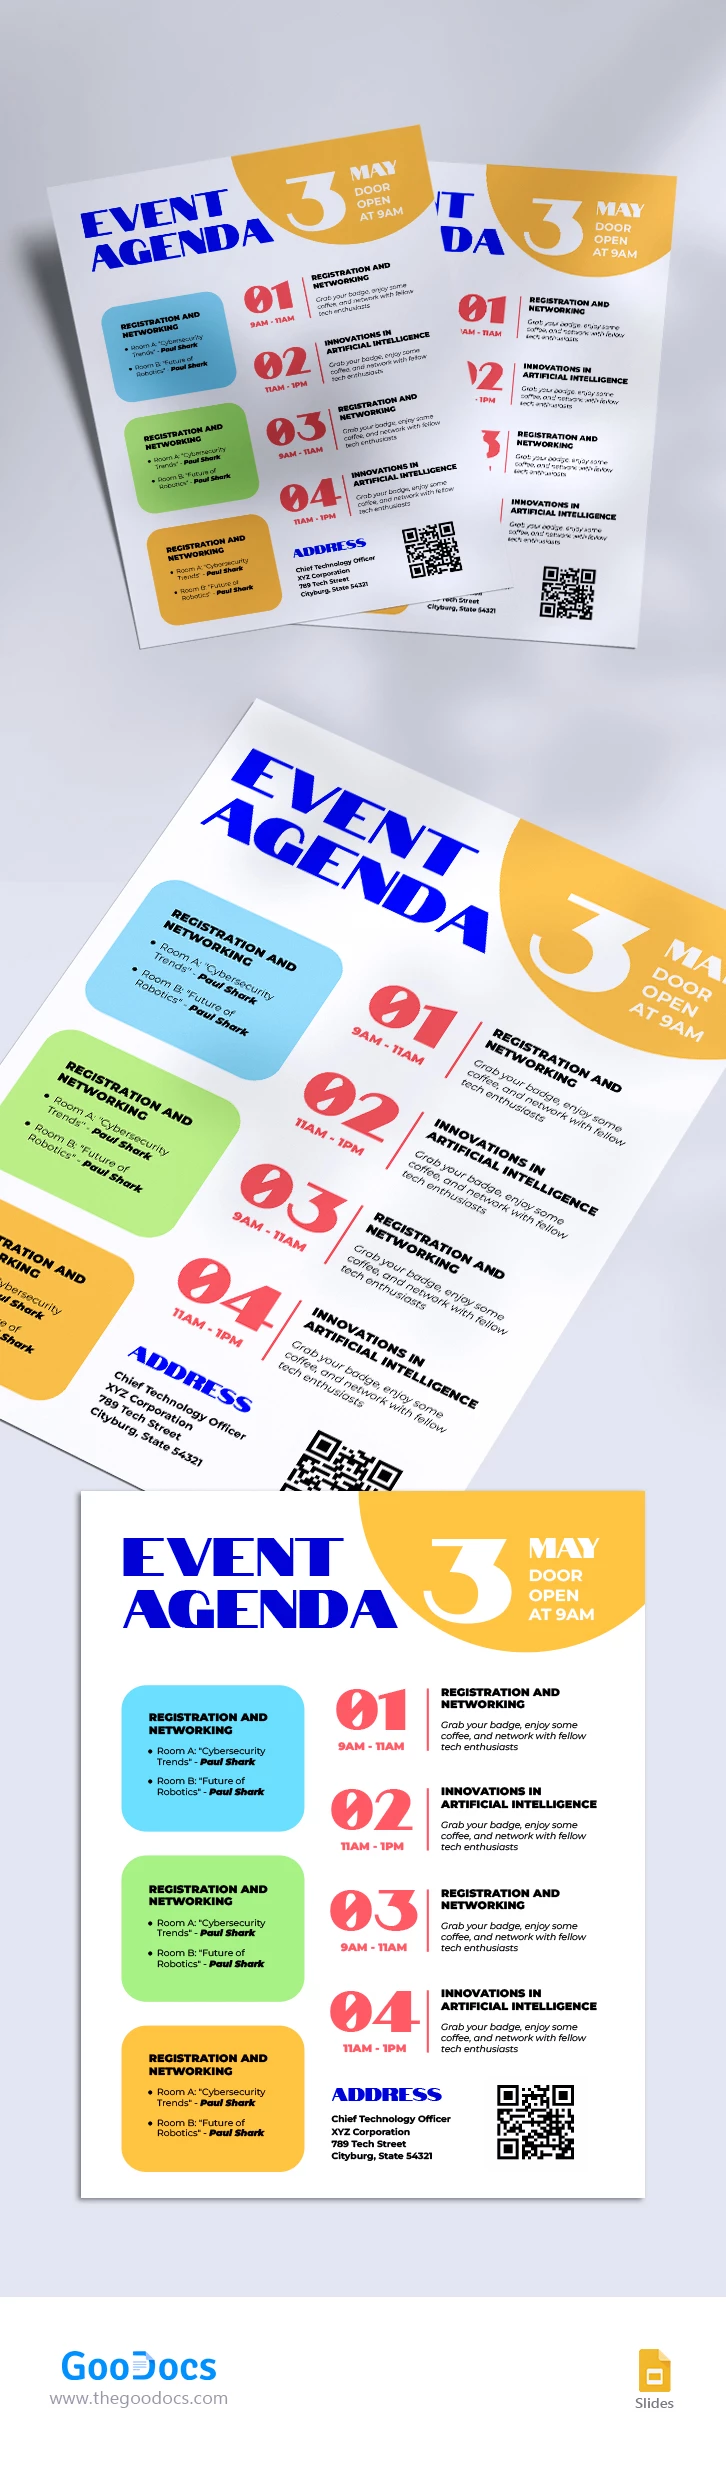 Agenda do Evento - free Google Docs Template - 10067678